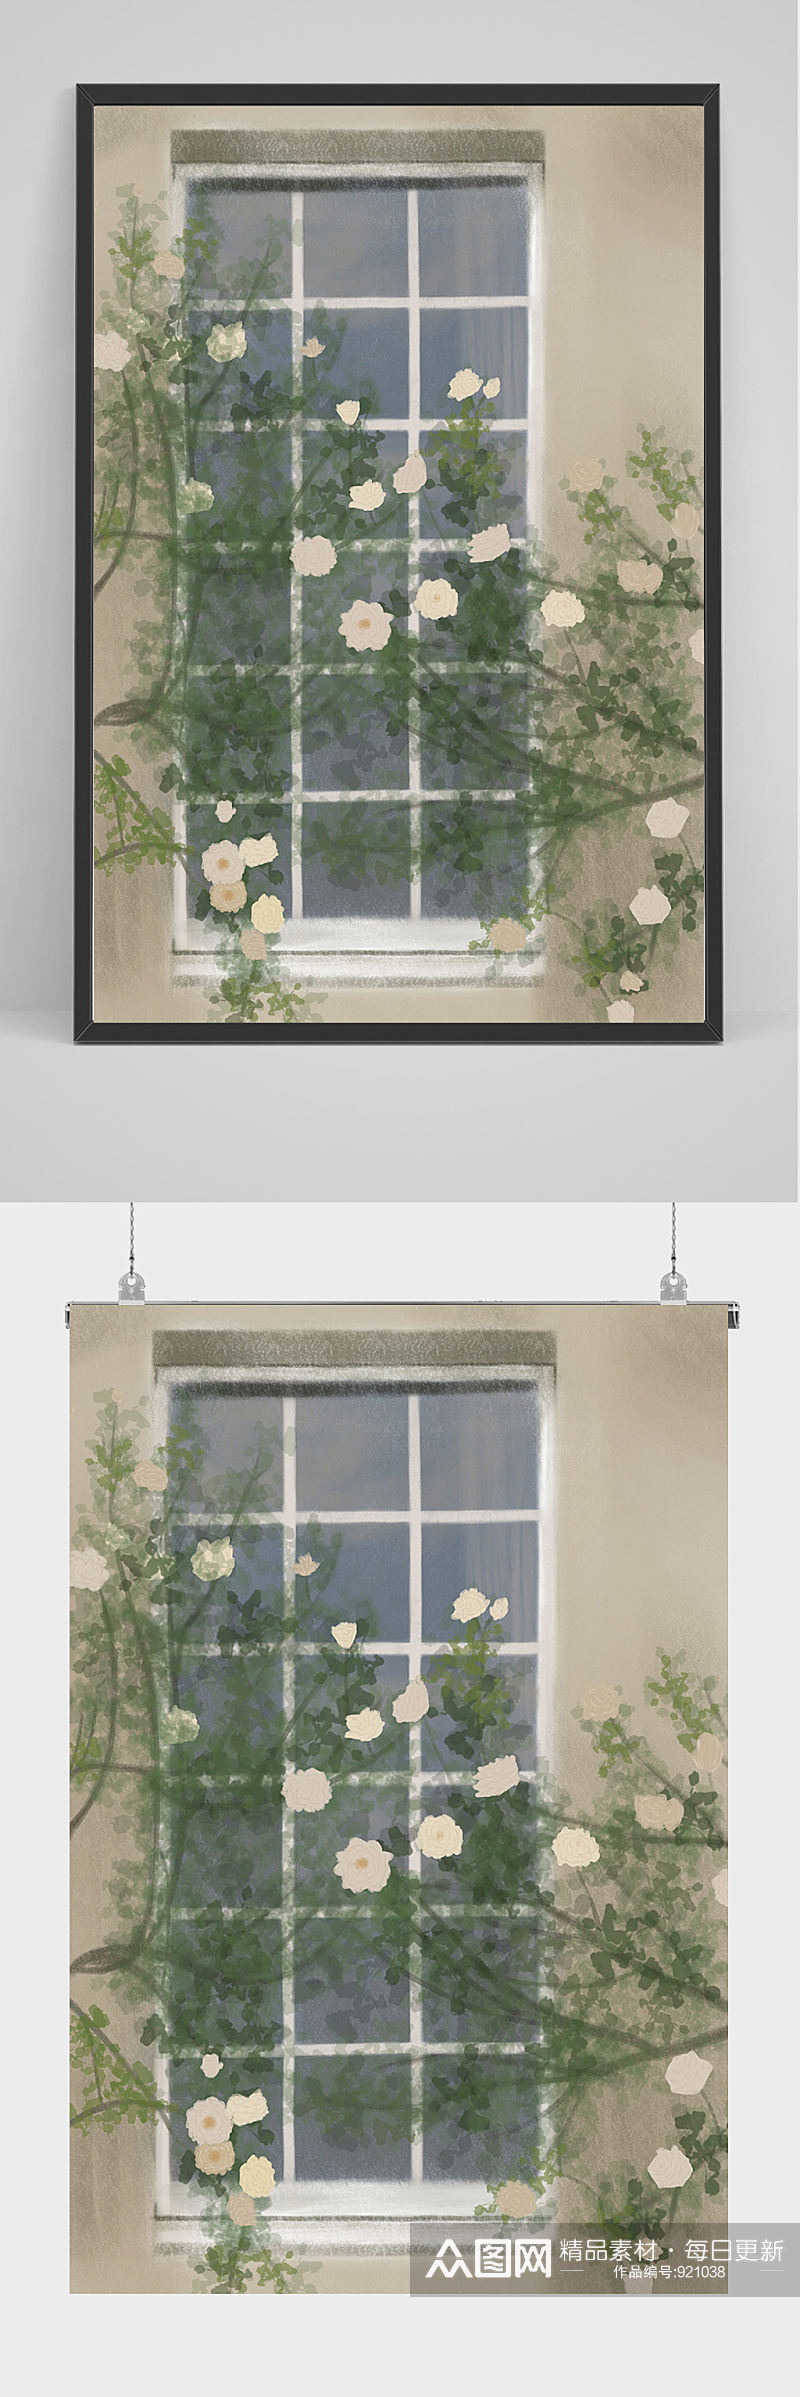 唯美小清新绿植窗户插画设计素材